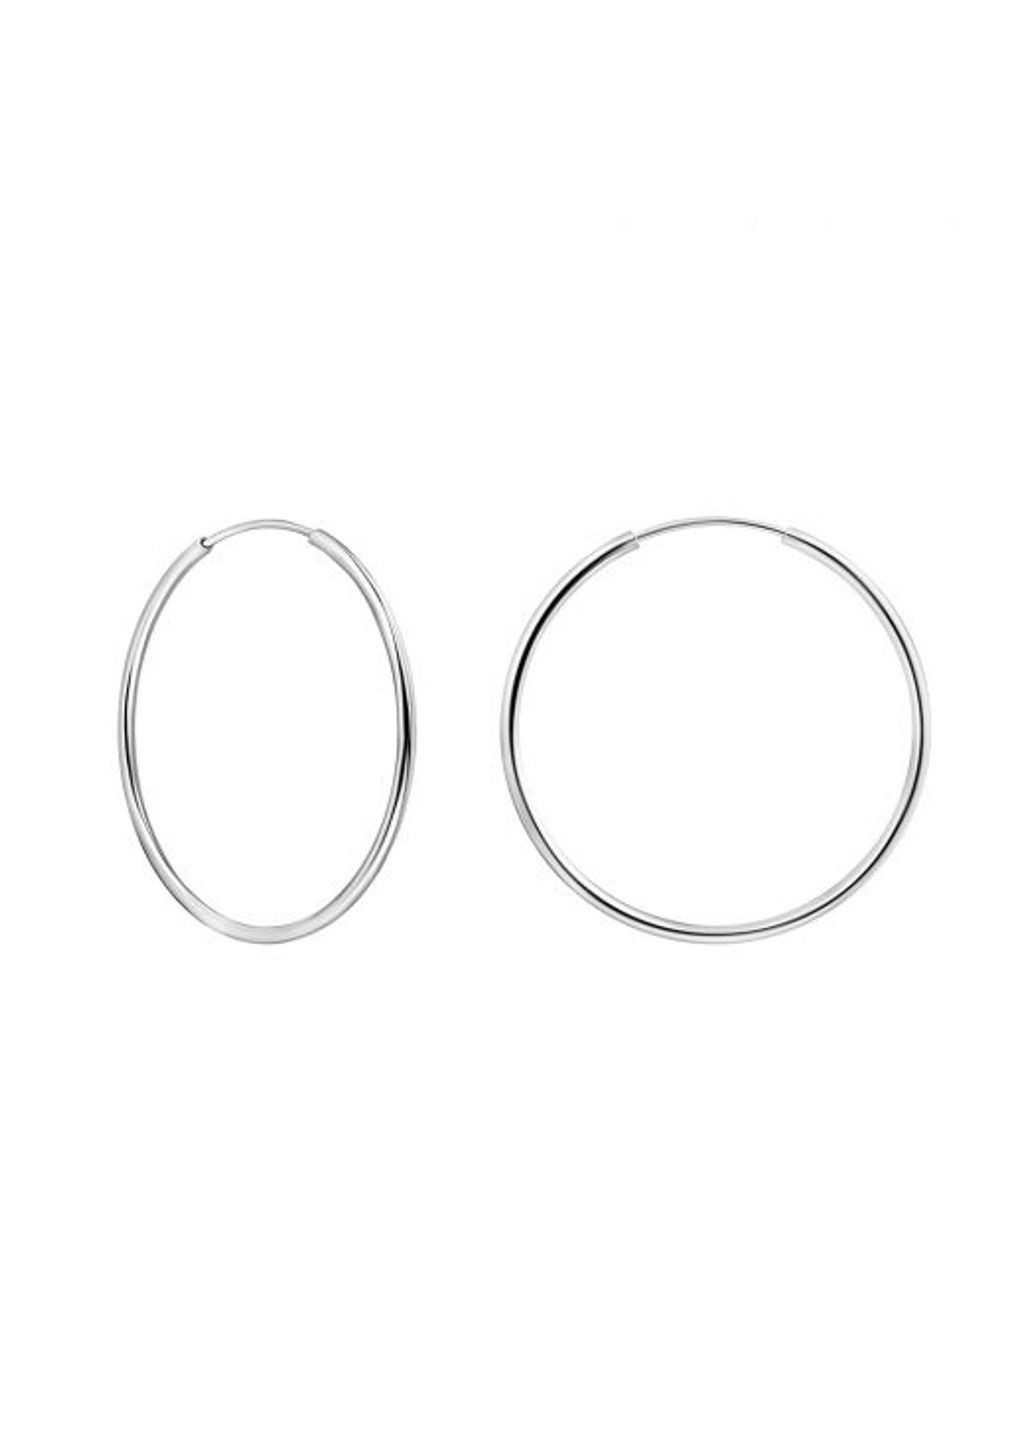 Срібні сережки Конго 35 мм UMAX (289351657)